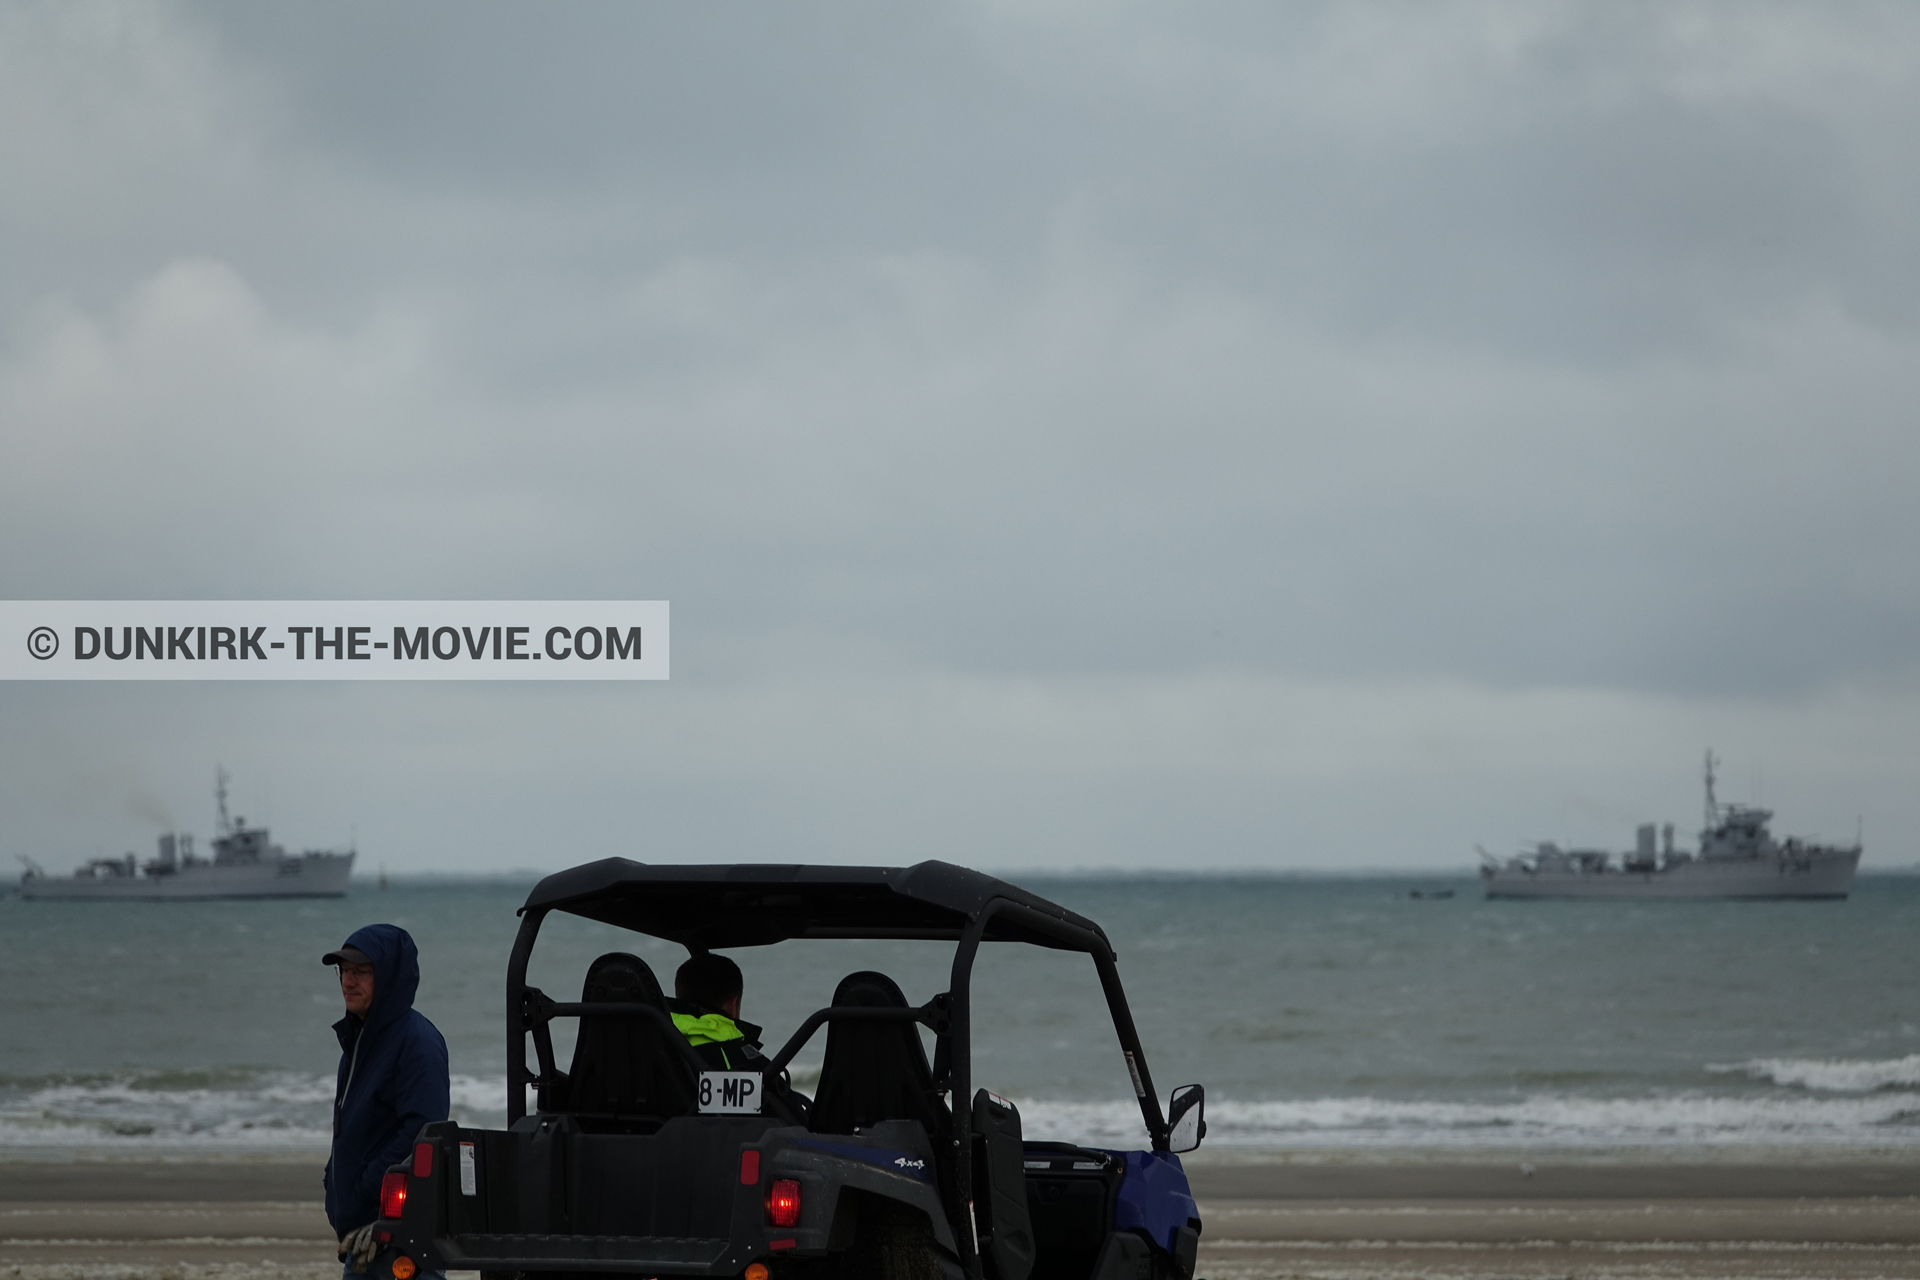 Fotos con barco, cielo nublado, playa, equipo técnica,  durante el rodaje de la película Dunkerque de Nolan